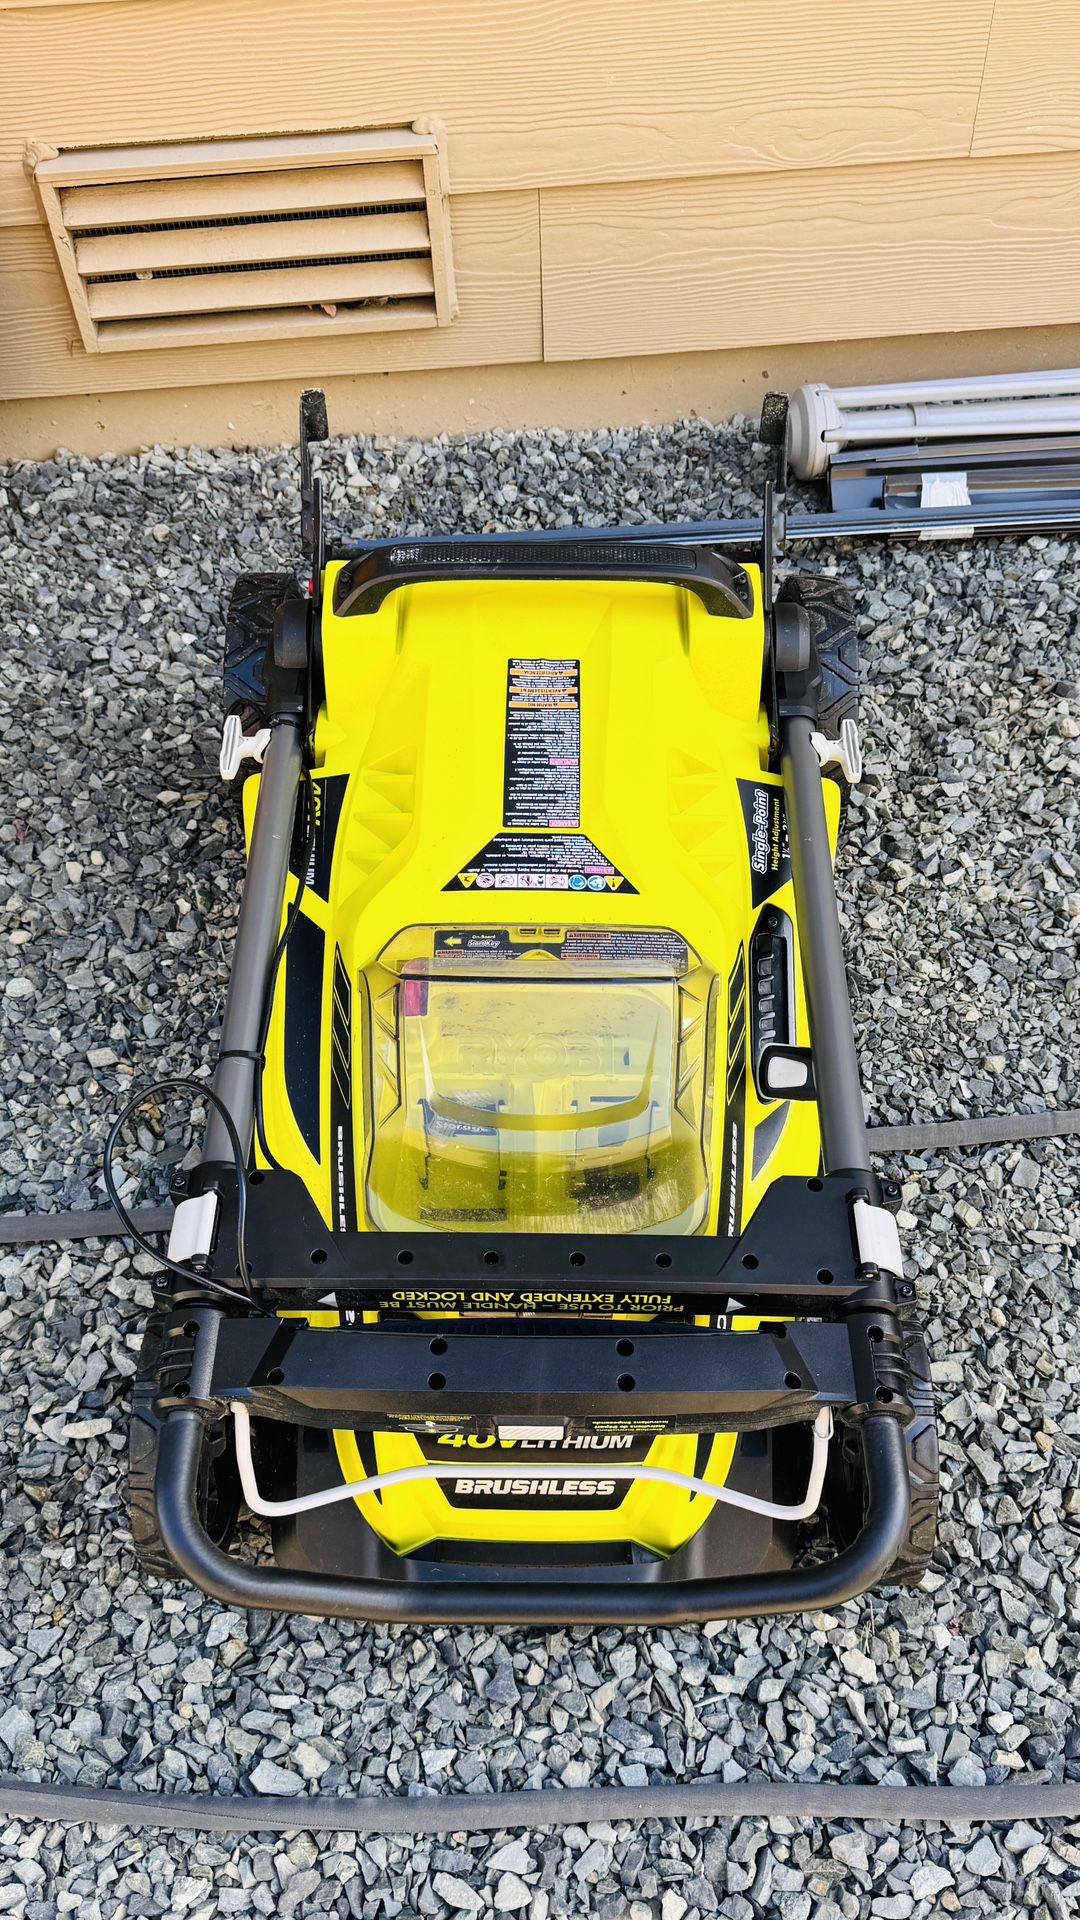 Ryobi Lawnmower & Edge Trimmer (battery Powered)